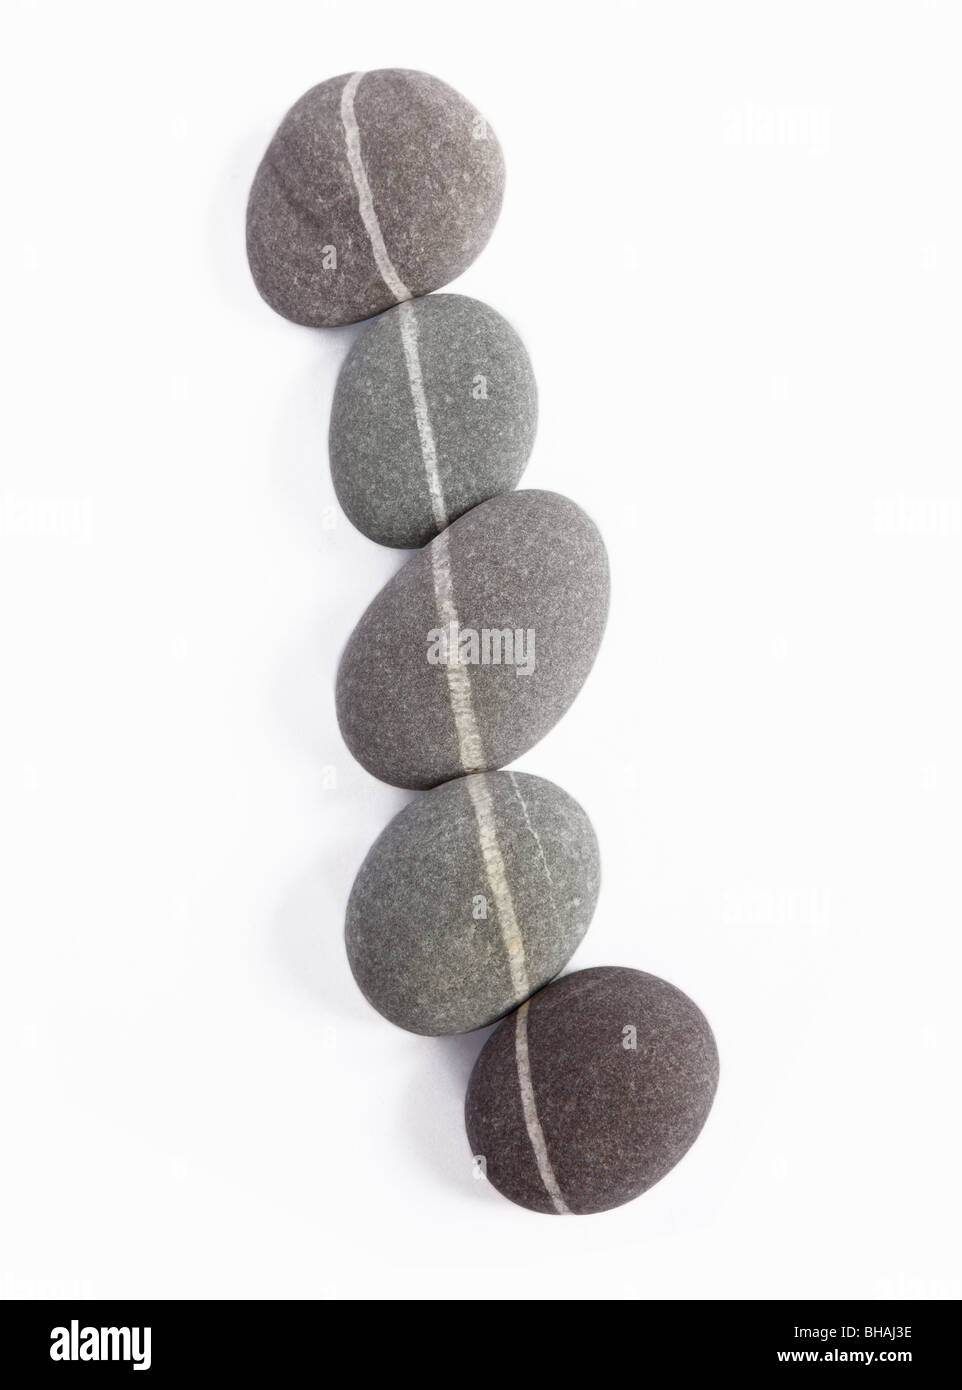 Cinco piedras de granito, cada una con una veta de cuarzo, se alinean de manera que las vetas de cuarzo crear una línea continua. Foto de stock